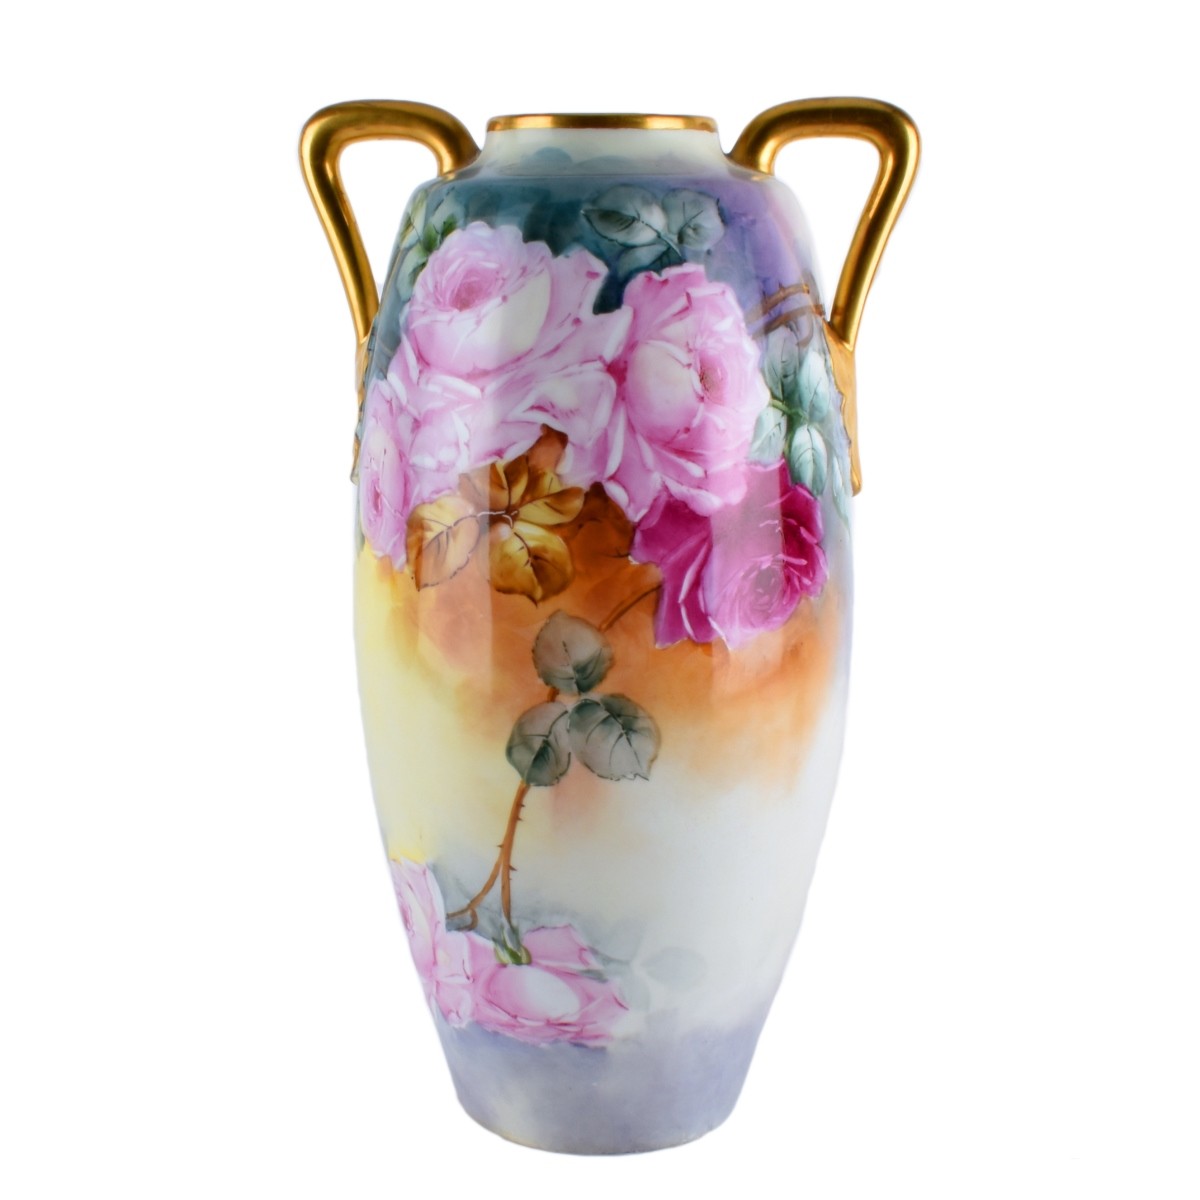 Antique Austrian Gilded Porcelain Handled Vase